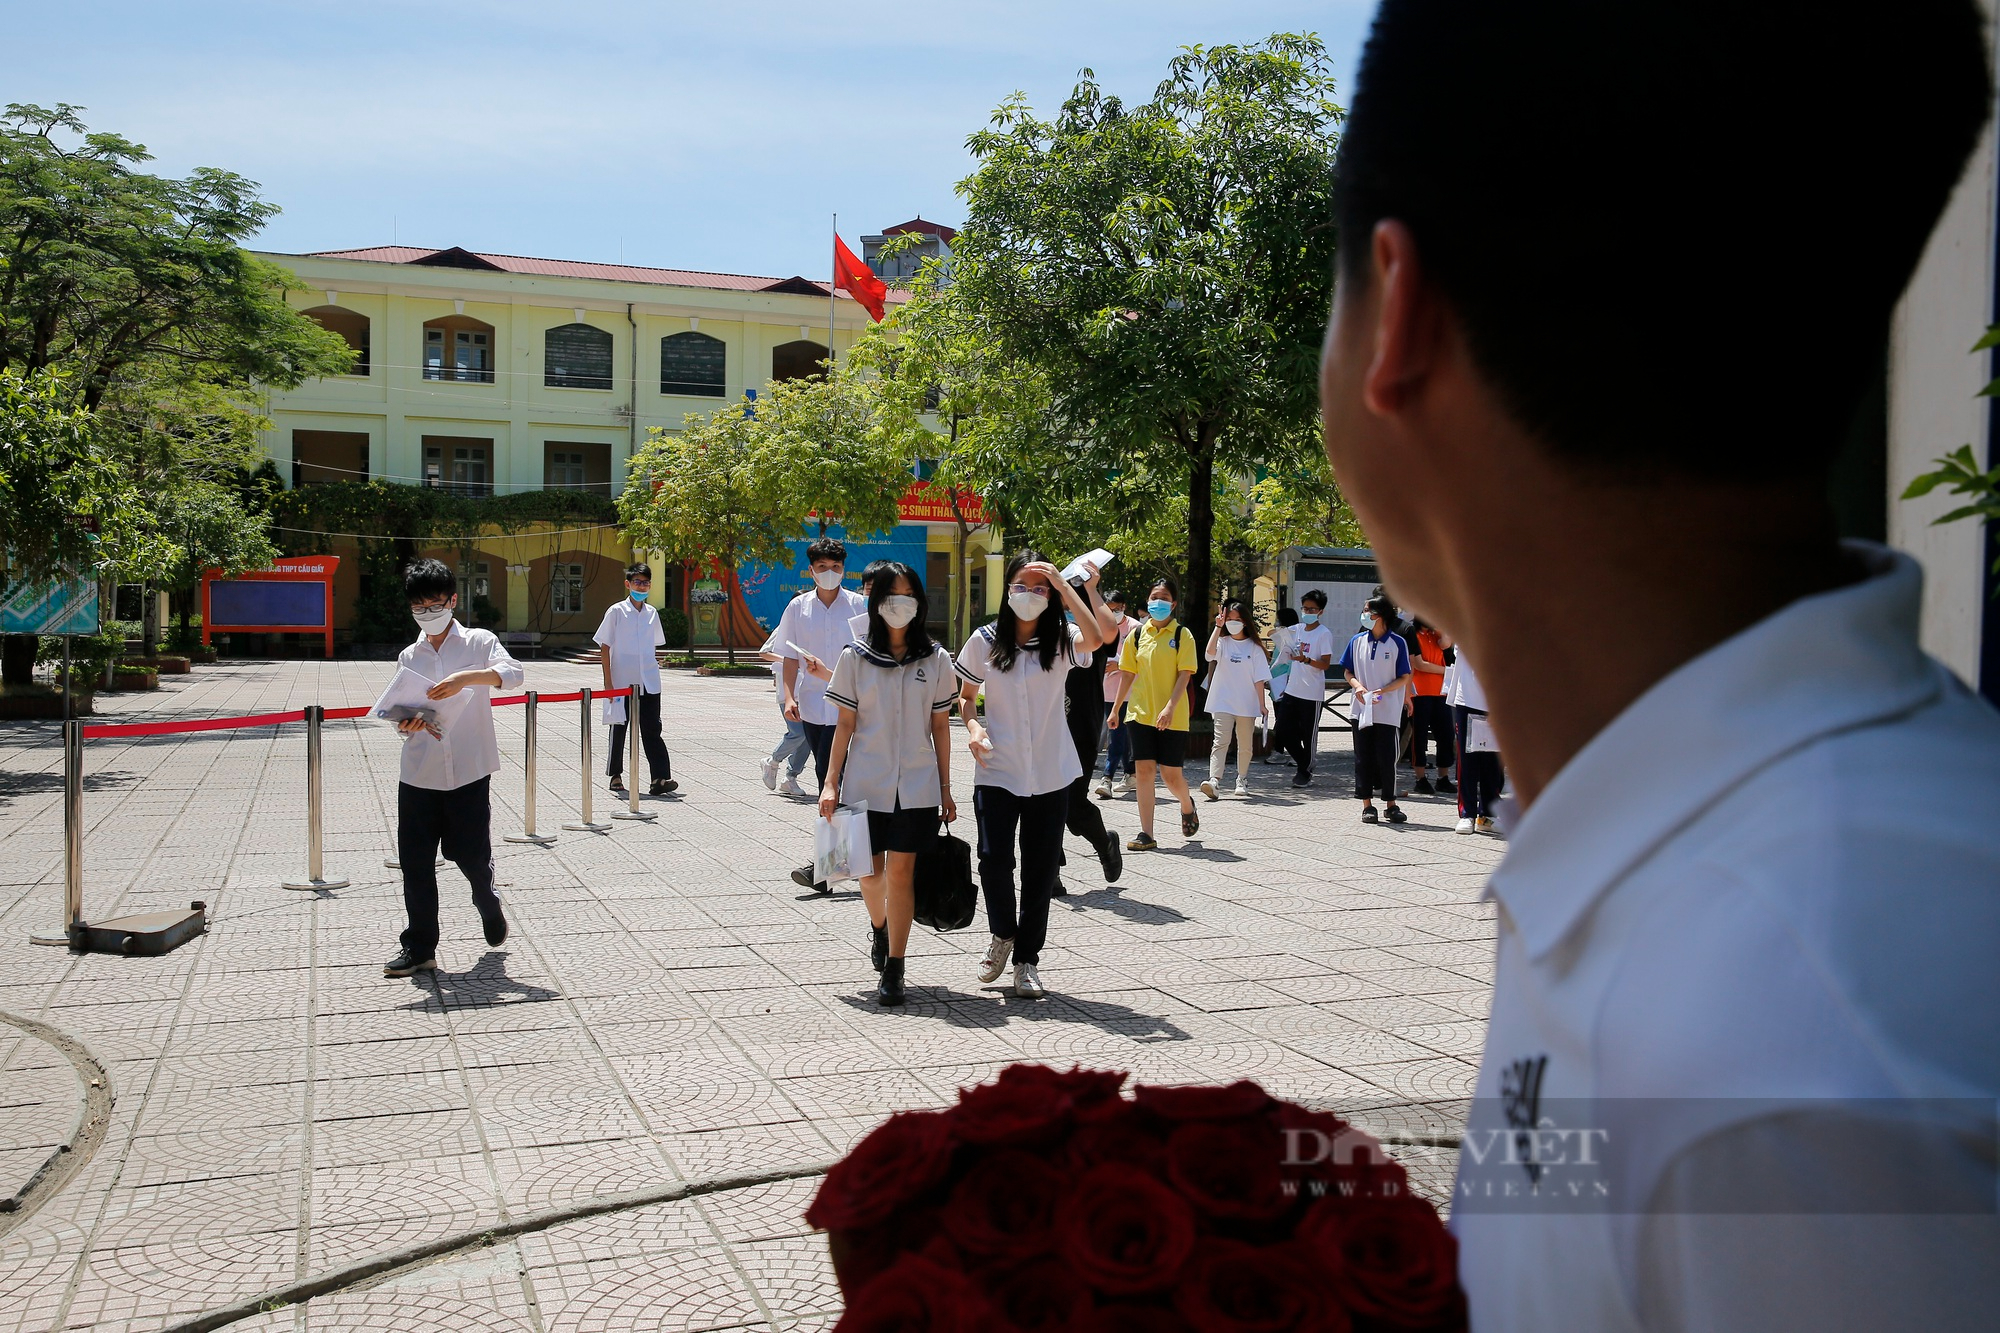 Hình ảnh người cha cầm bó hoa đợi con gái trước cổng trường gây chú ý trong kỳ thi lớp 10 tại Hà Nội - Ảnh 3.